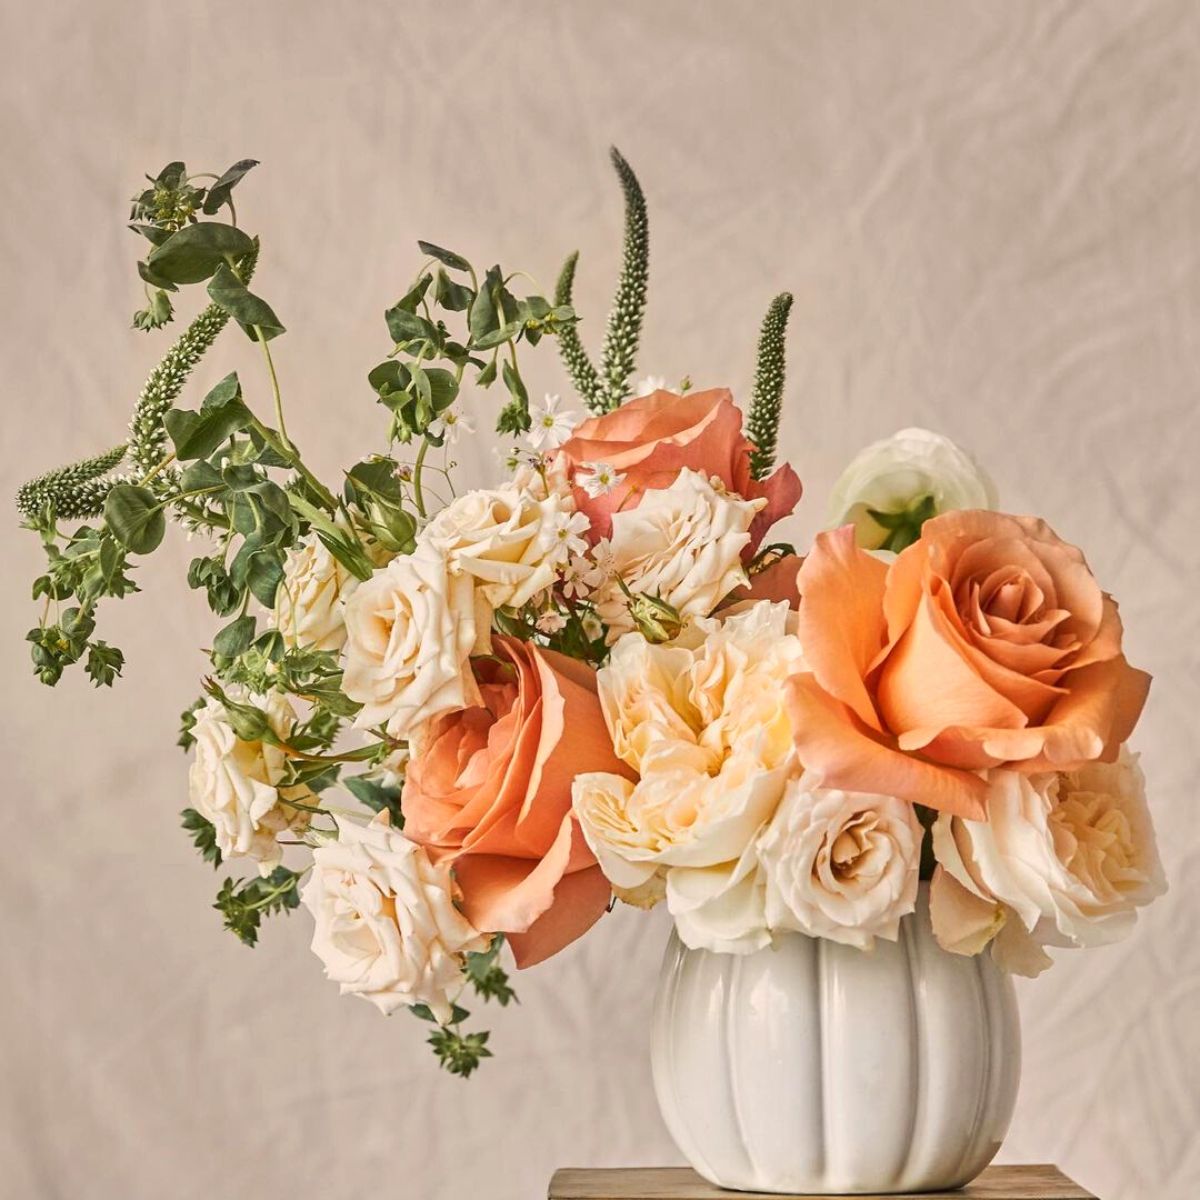 Beautiful floral arrangement in neutral tones by Rosaprima